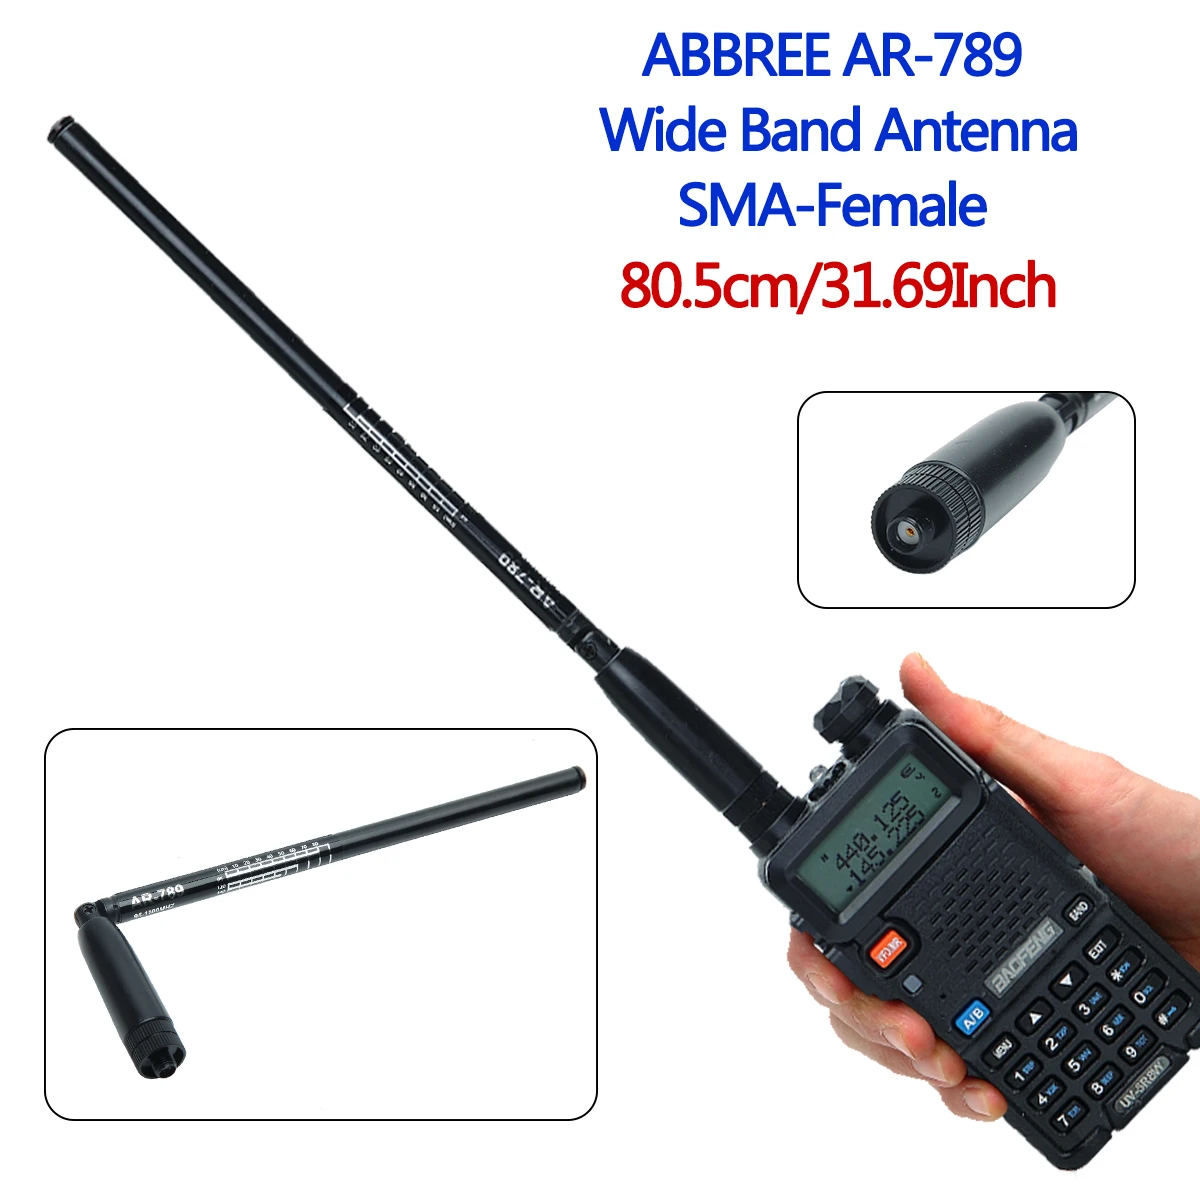 Оригинальная Широкополосная Антенна ABBREE AR-789 95 МГц-1100 МГц SMA-Female Складная Телескопическая Антенна для Портативной Рации Baofeng WOUXUN TYT 0